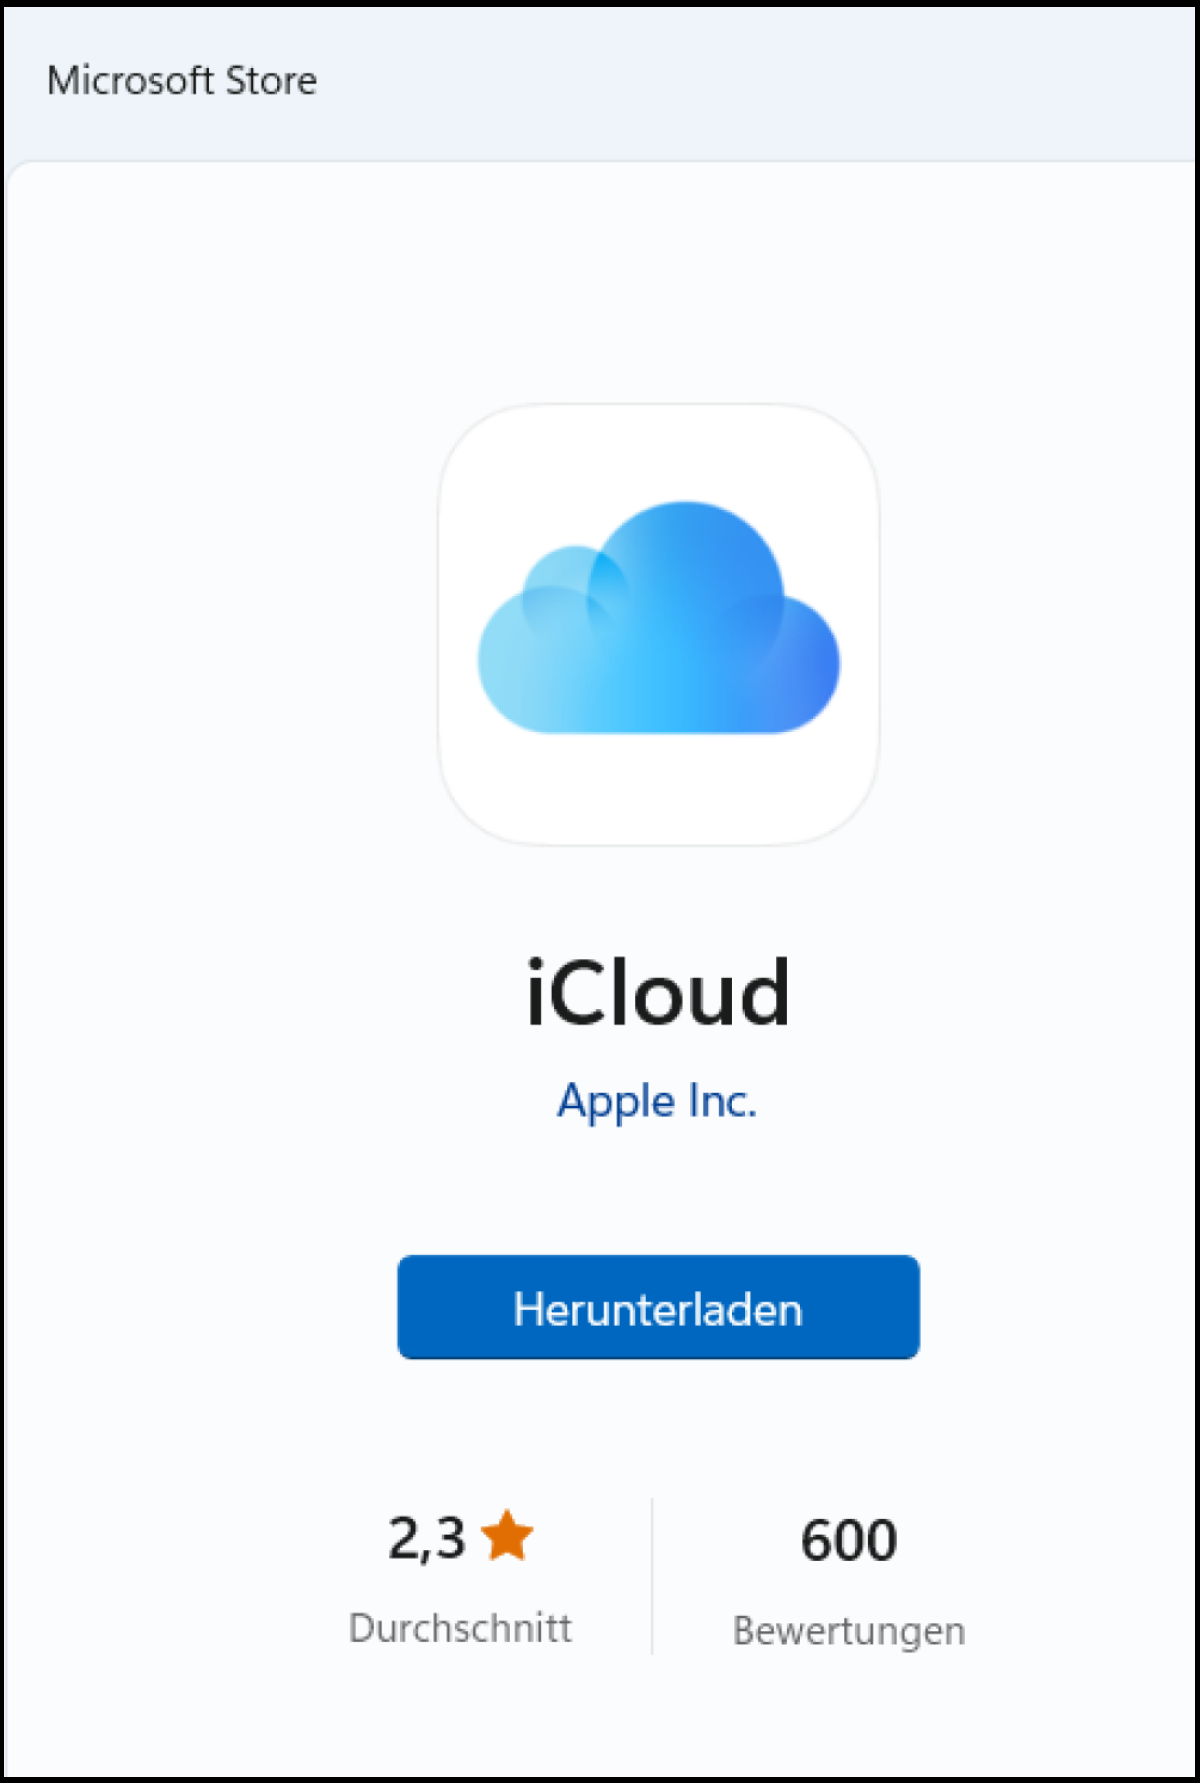 Die iCloud-Desktop-App im Microsoft Store